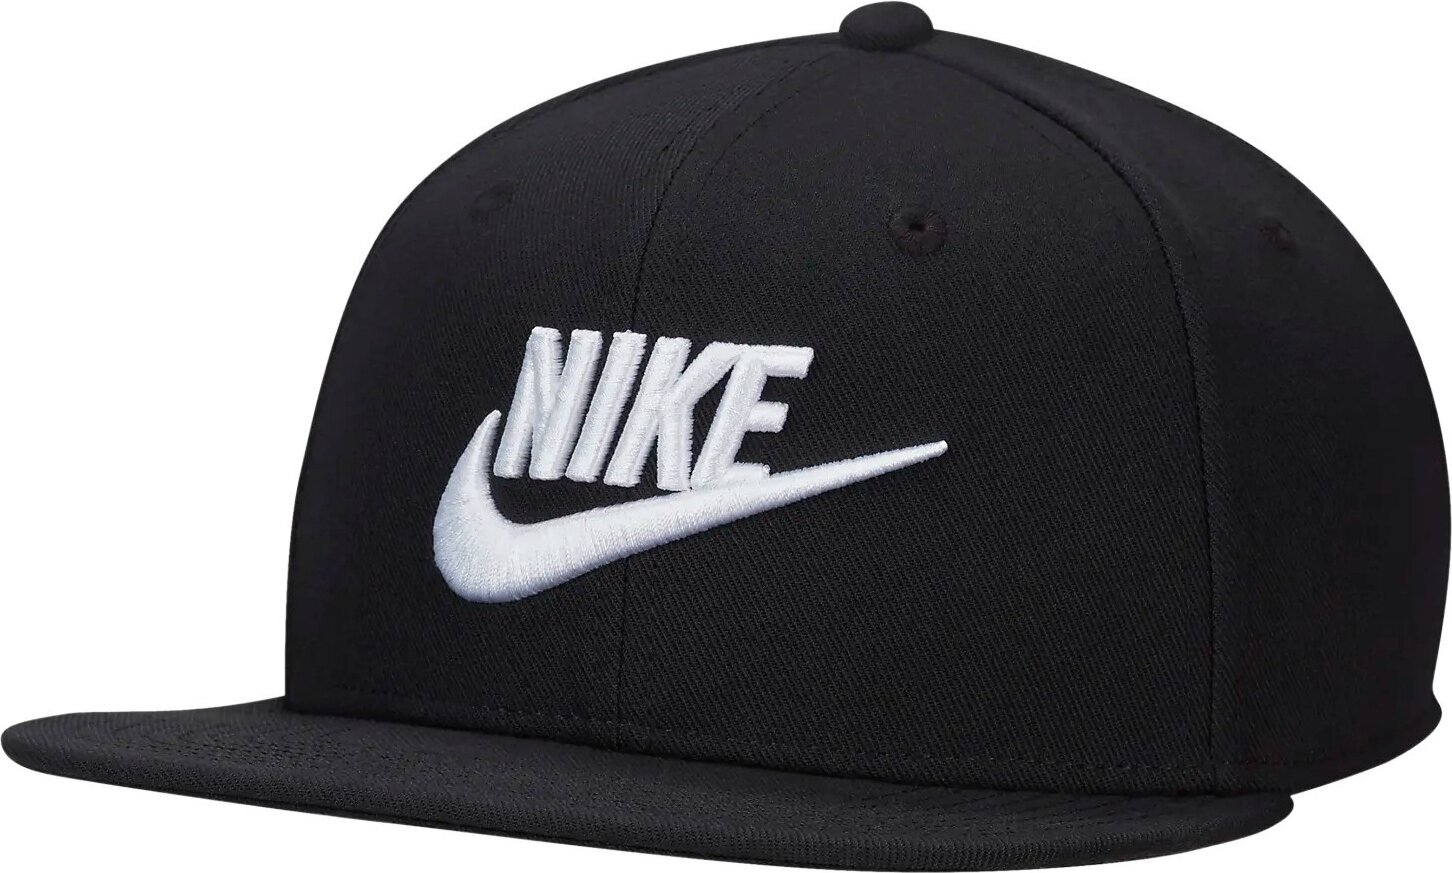 Mütze Nike Dri-Fit Pro Cap Black/Black/Black/White S/M